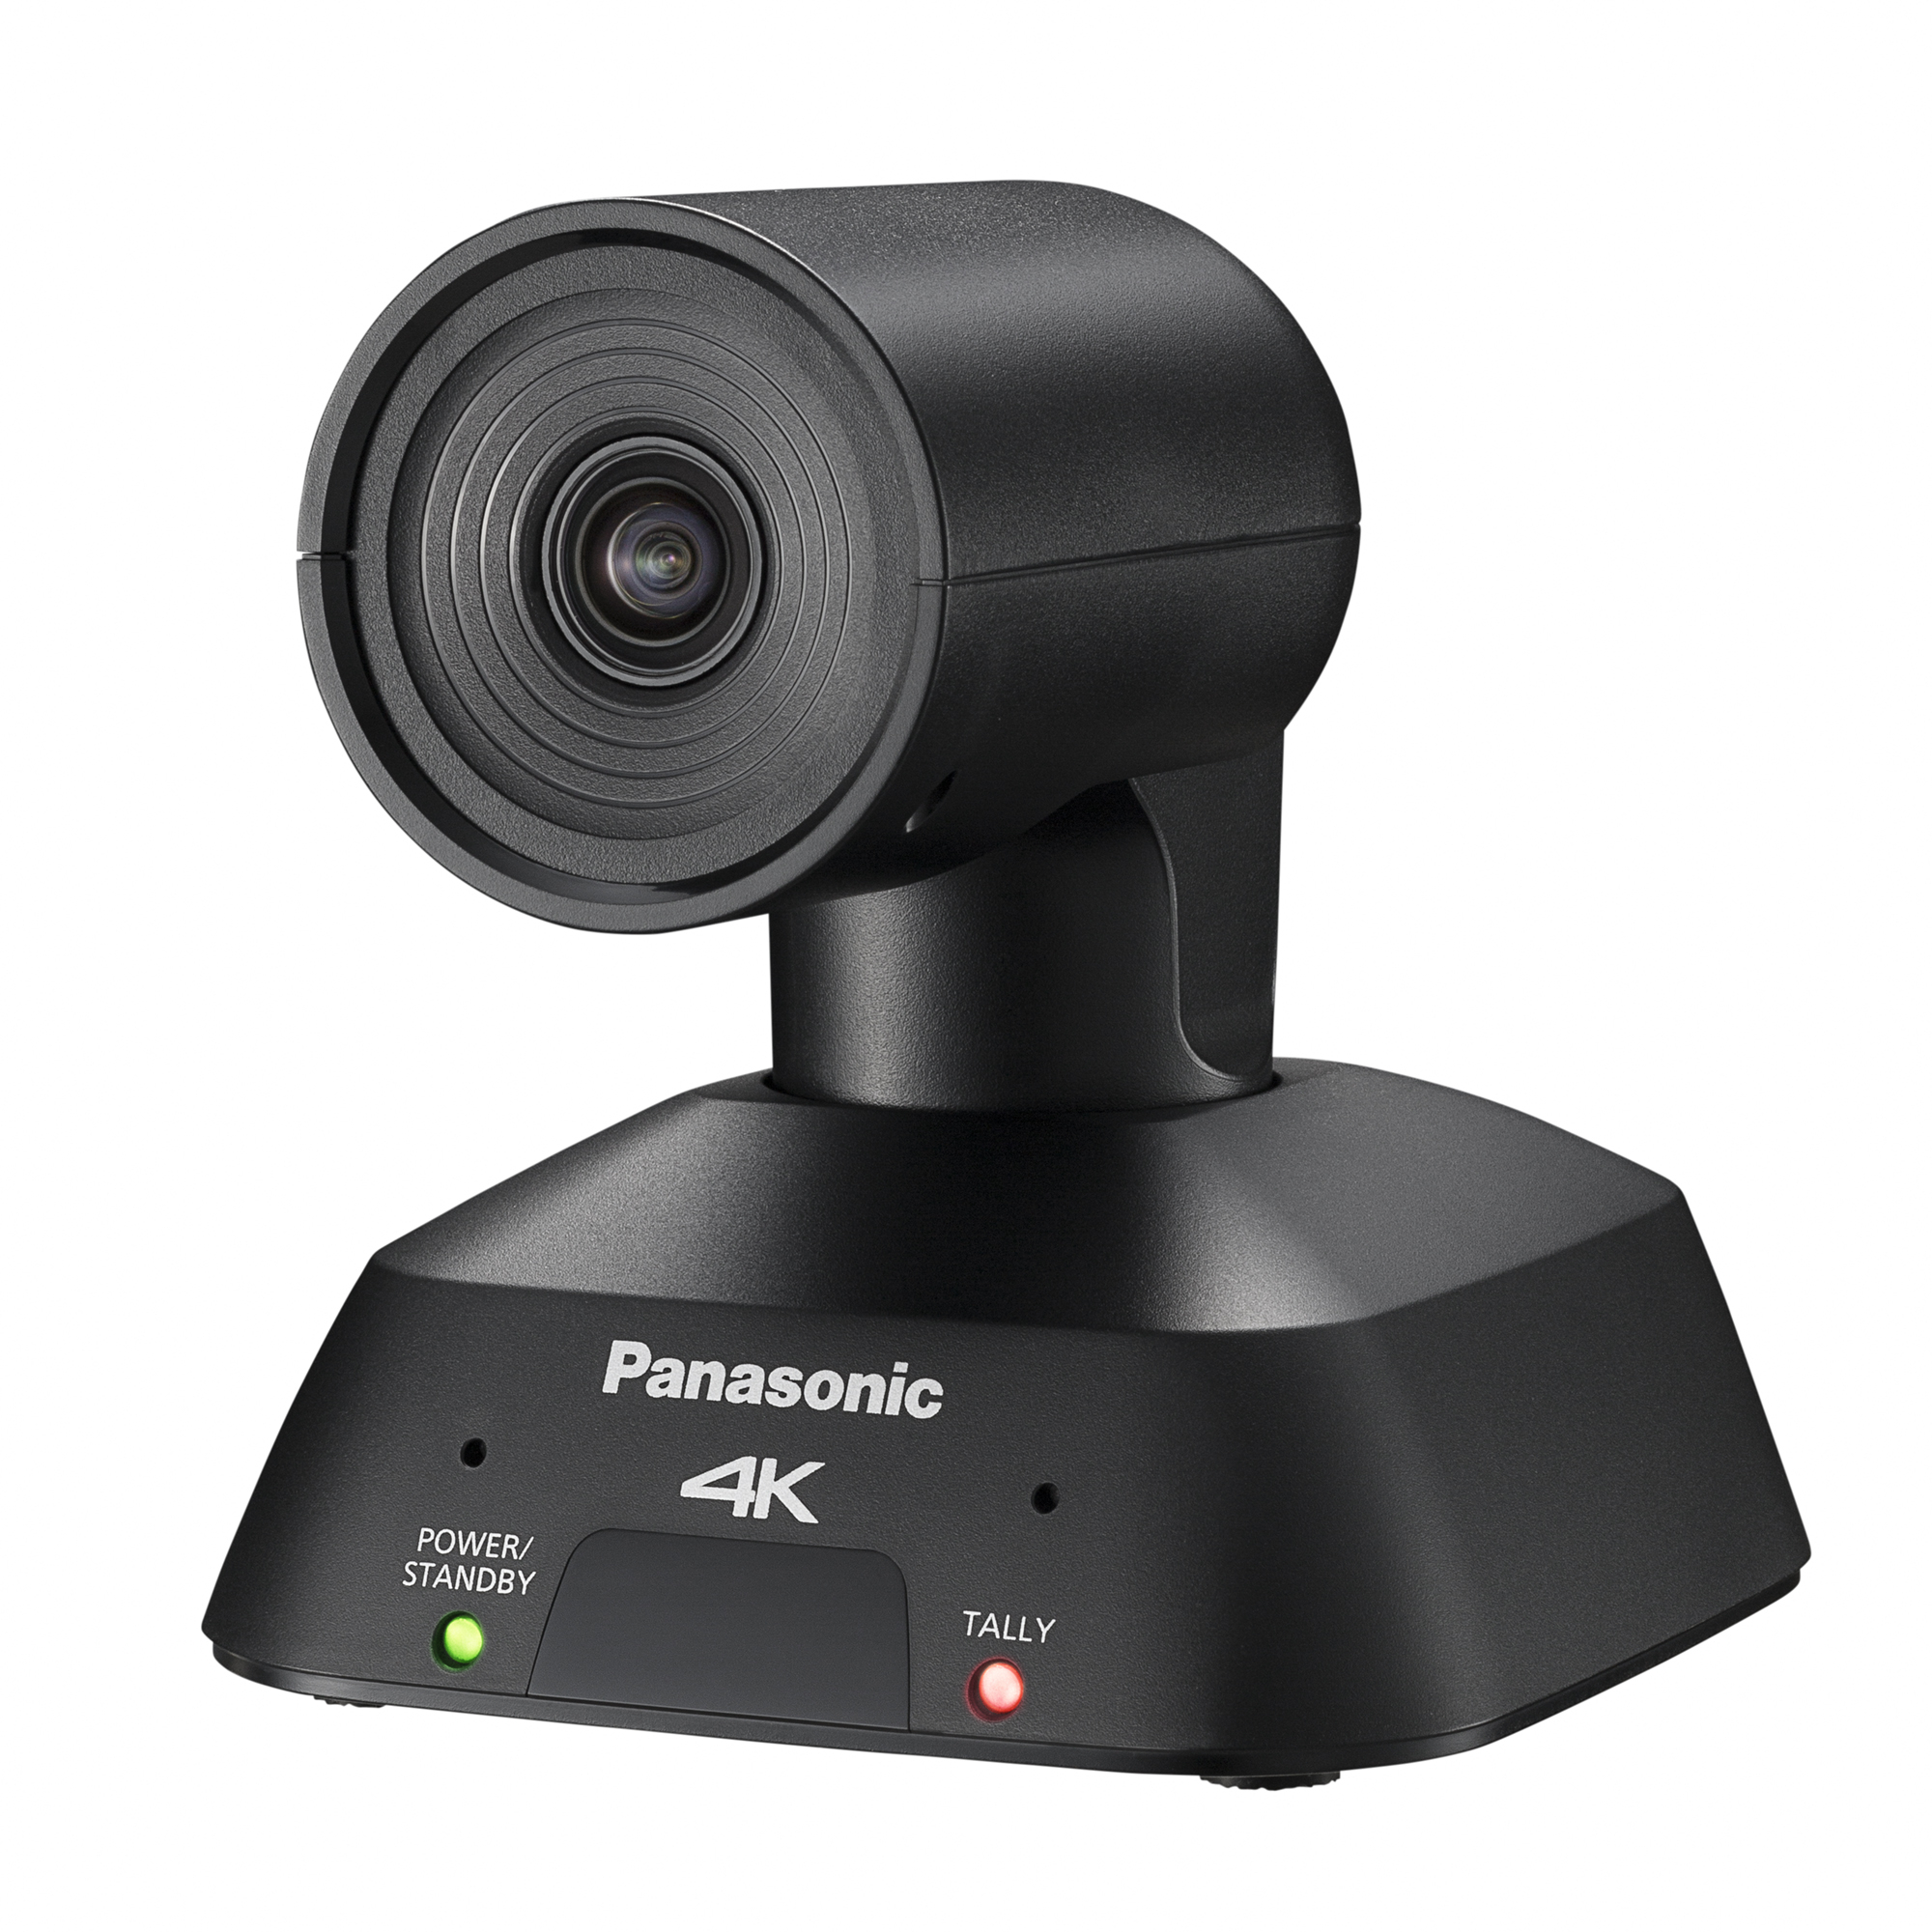 Panasonic AW-UE4 PTZ Camera - Black Version